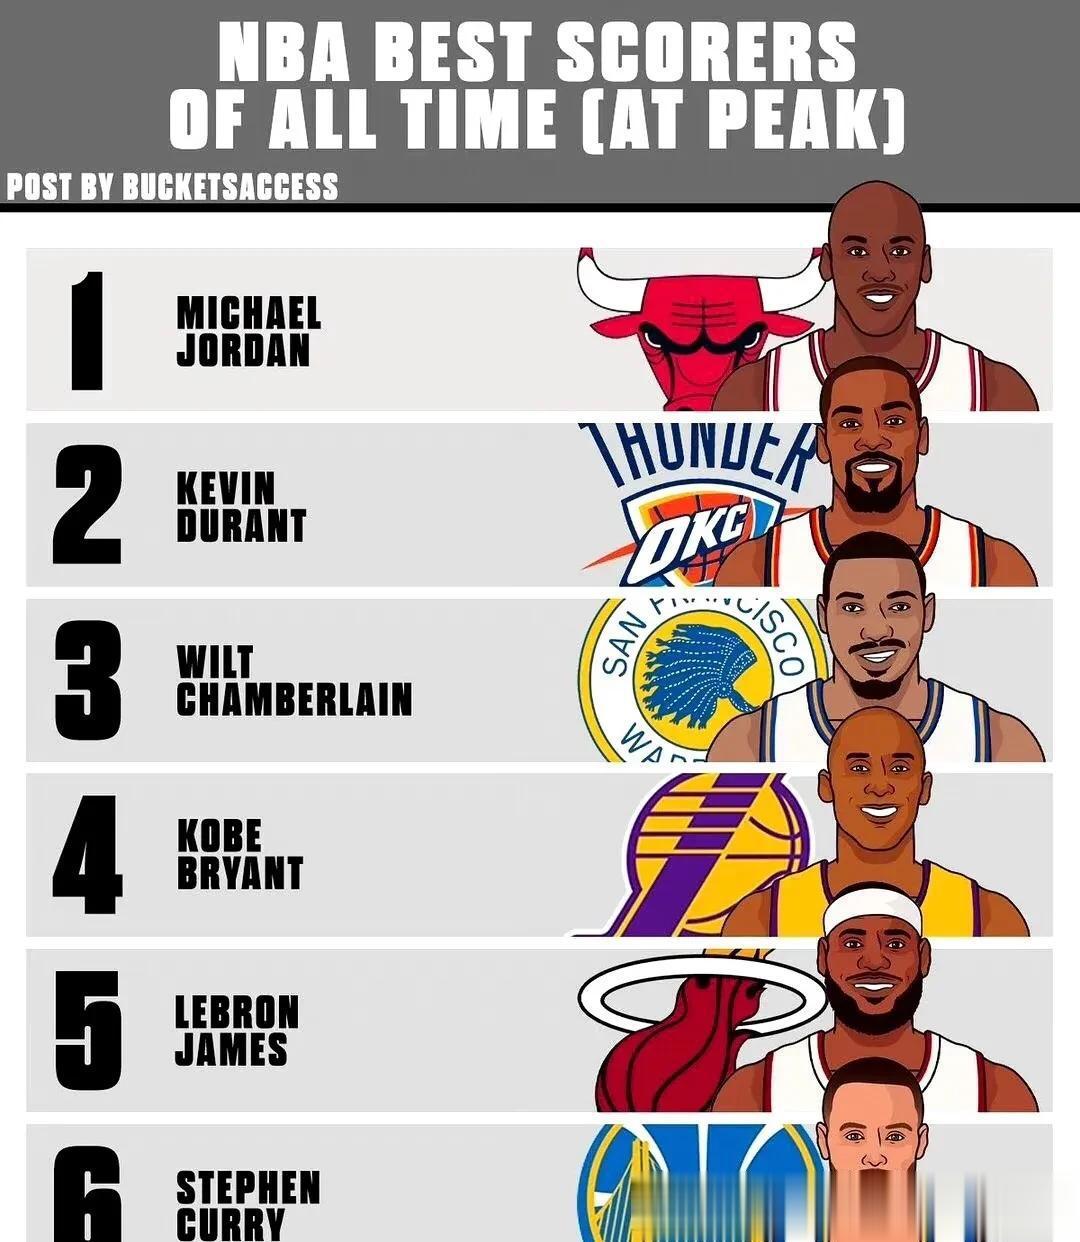 NBA历史得分能力最强的六人！
外媒评选的得分能力最强者们…
他们依次为：
乔丹(1)